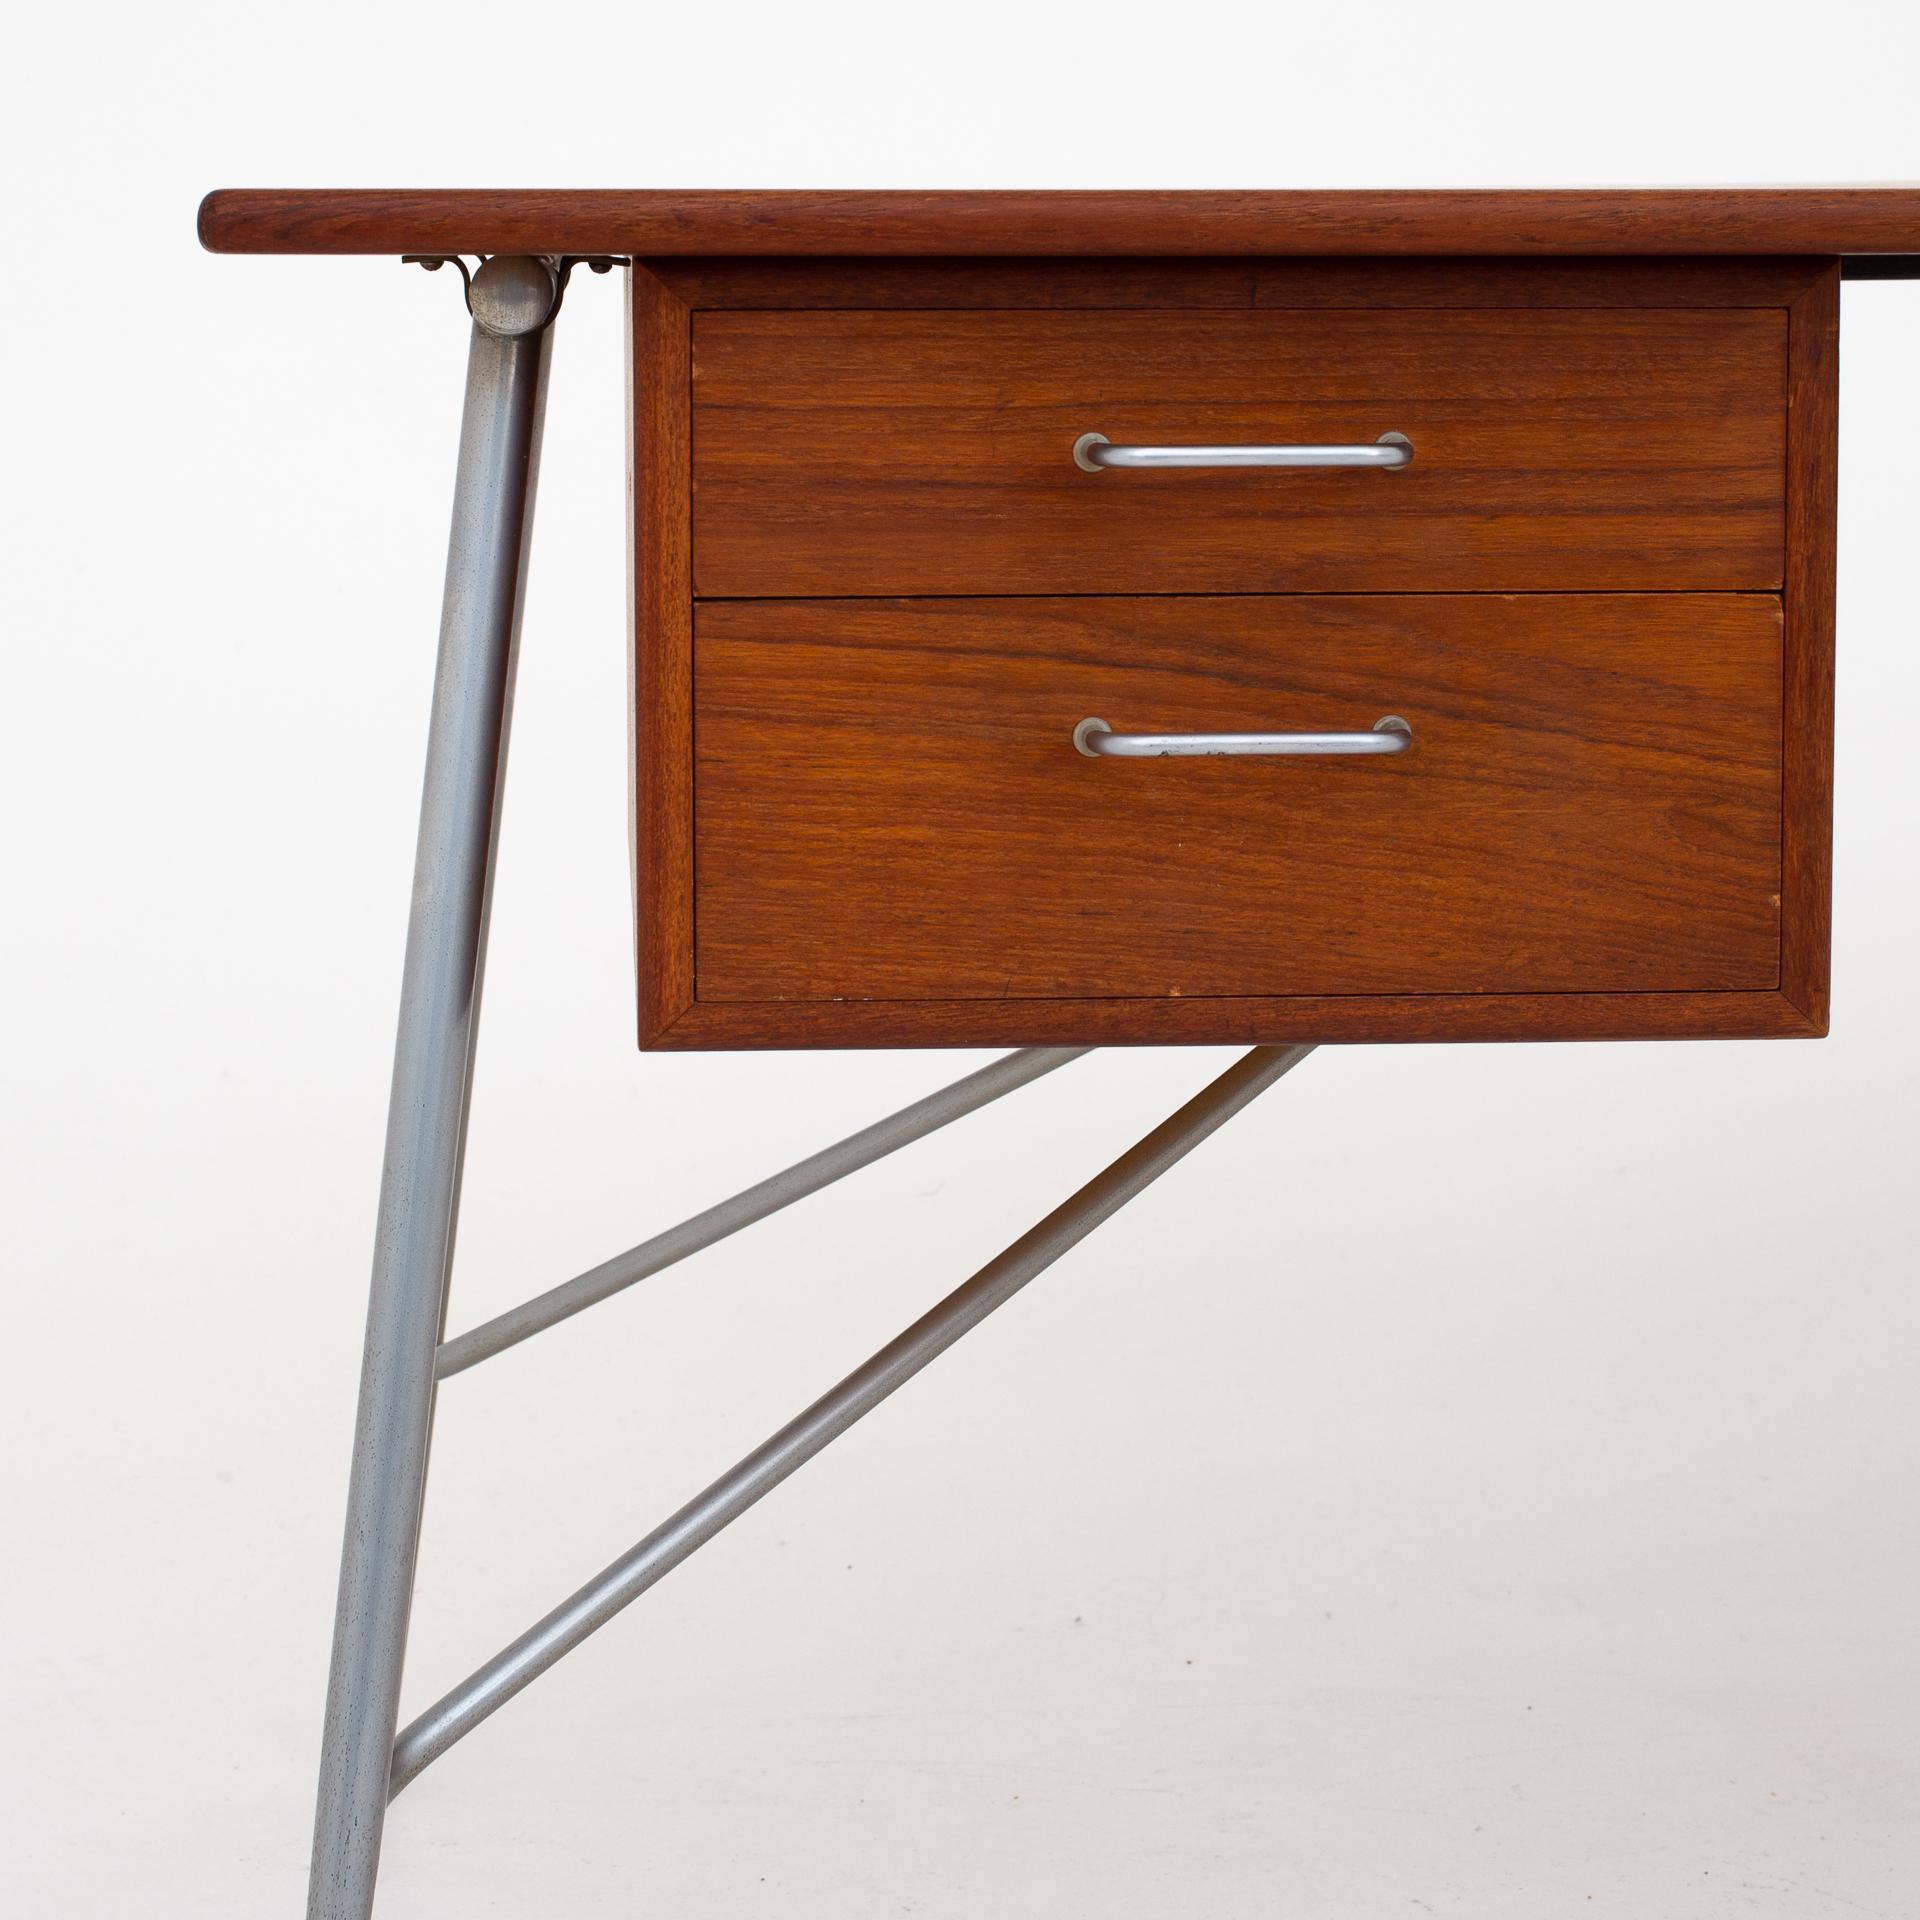 SM 202 - desk in teak on steel frame with four drawers. Designed in 1953. Maker Søborg Møbler.